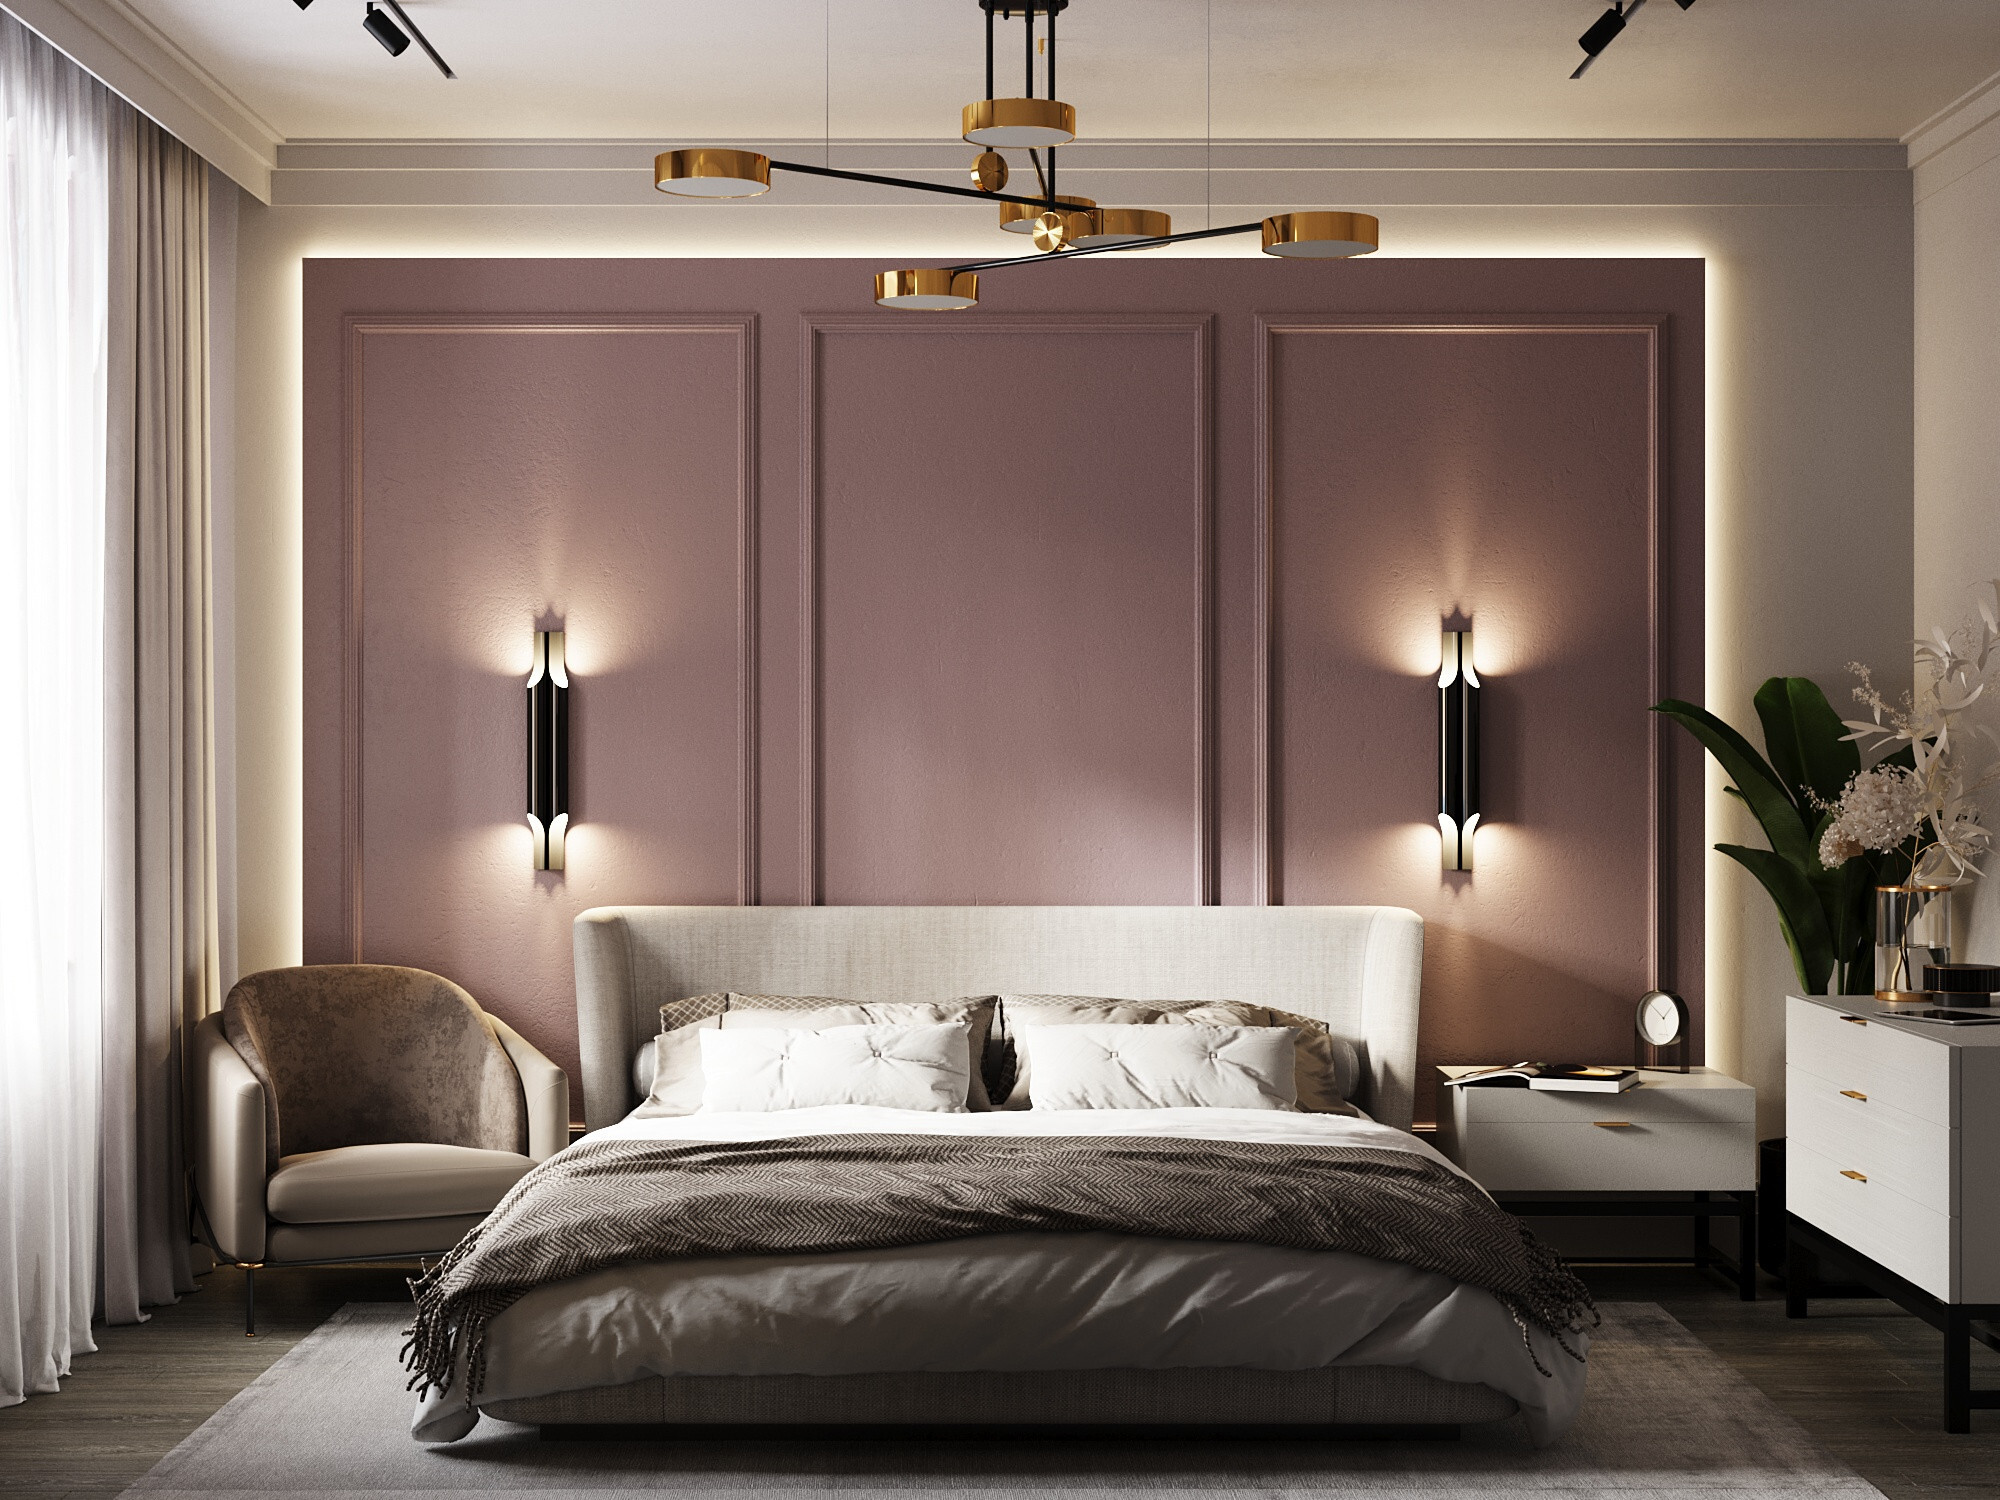 Интерьер спальни cветовыми линиями, подсветкой настенной, подсветкой светодиодной, светильниками над кроватью и с подсветкой в современном стиле